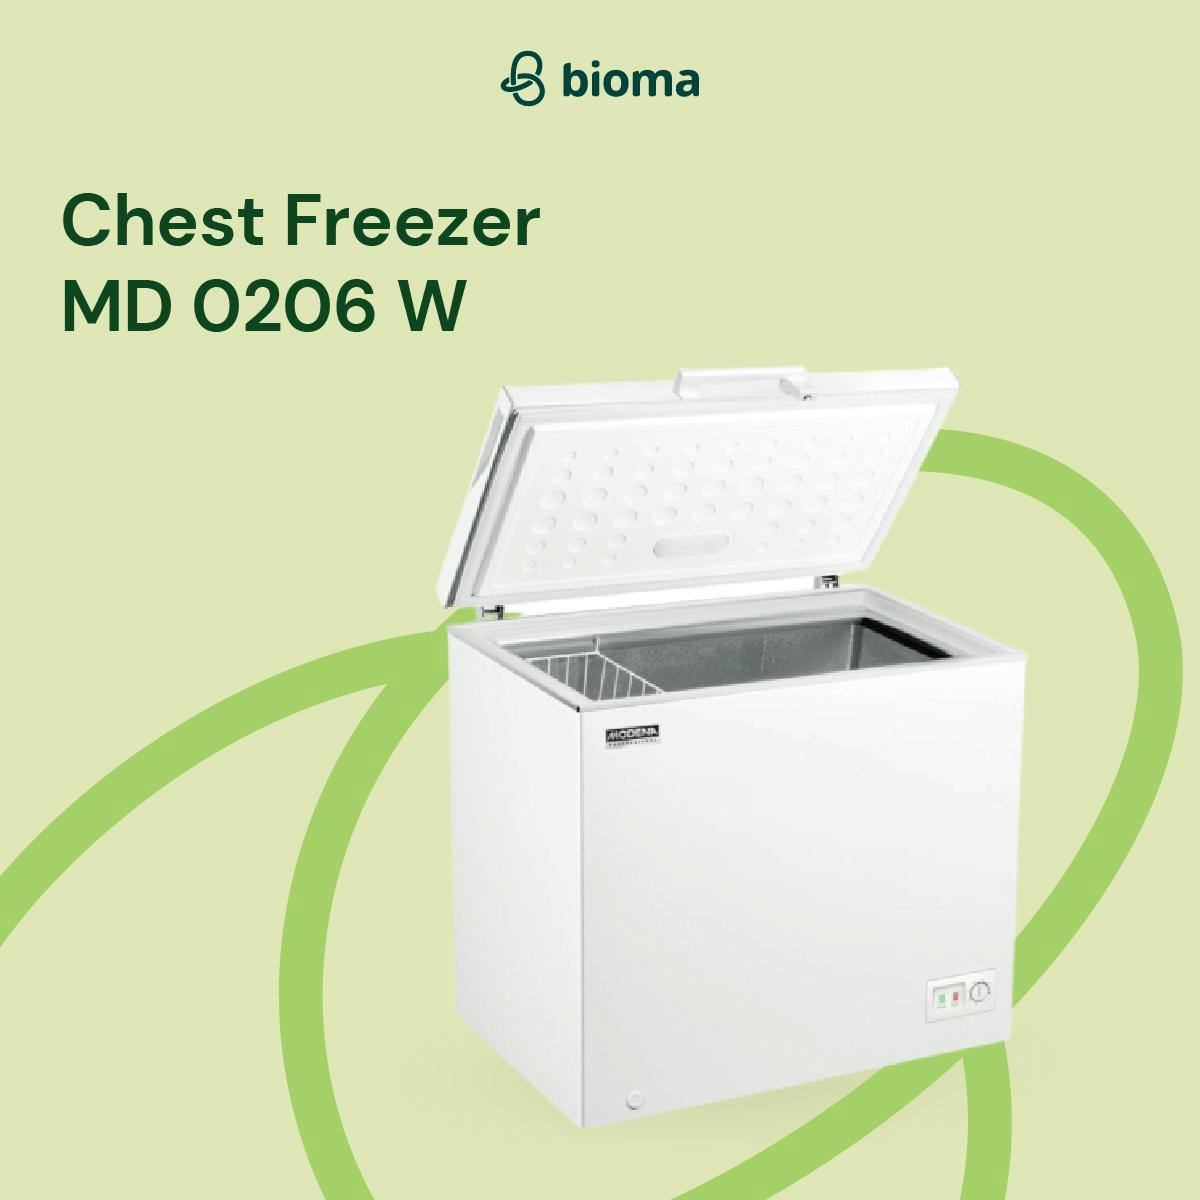 Chest Freezer MD 0206 W